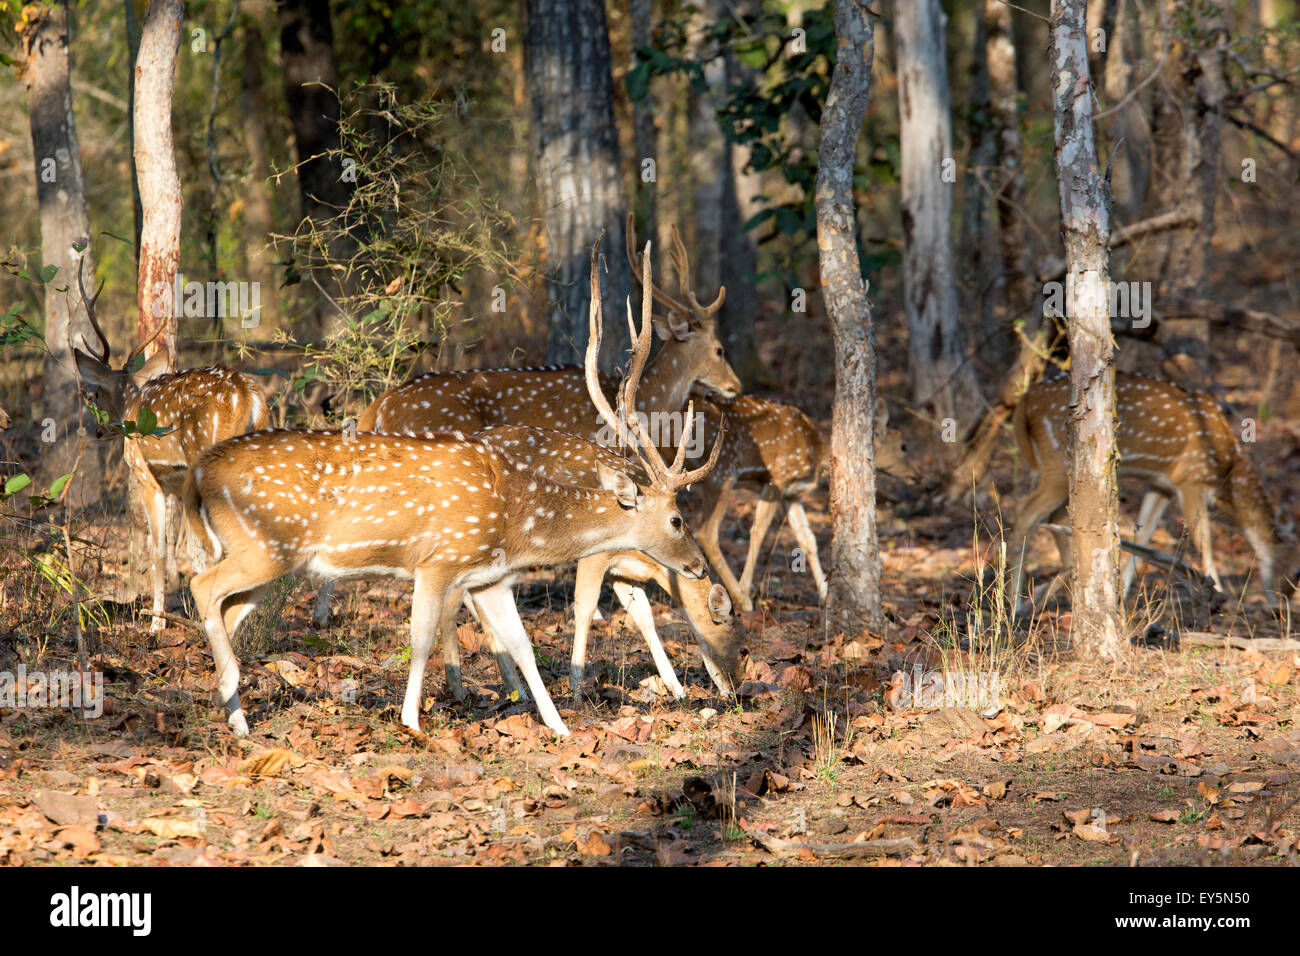 Ciervo Axis en el sotobosque - Bandhavgarh NP India Foto de stock